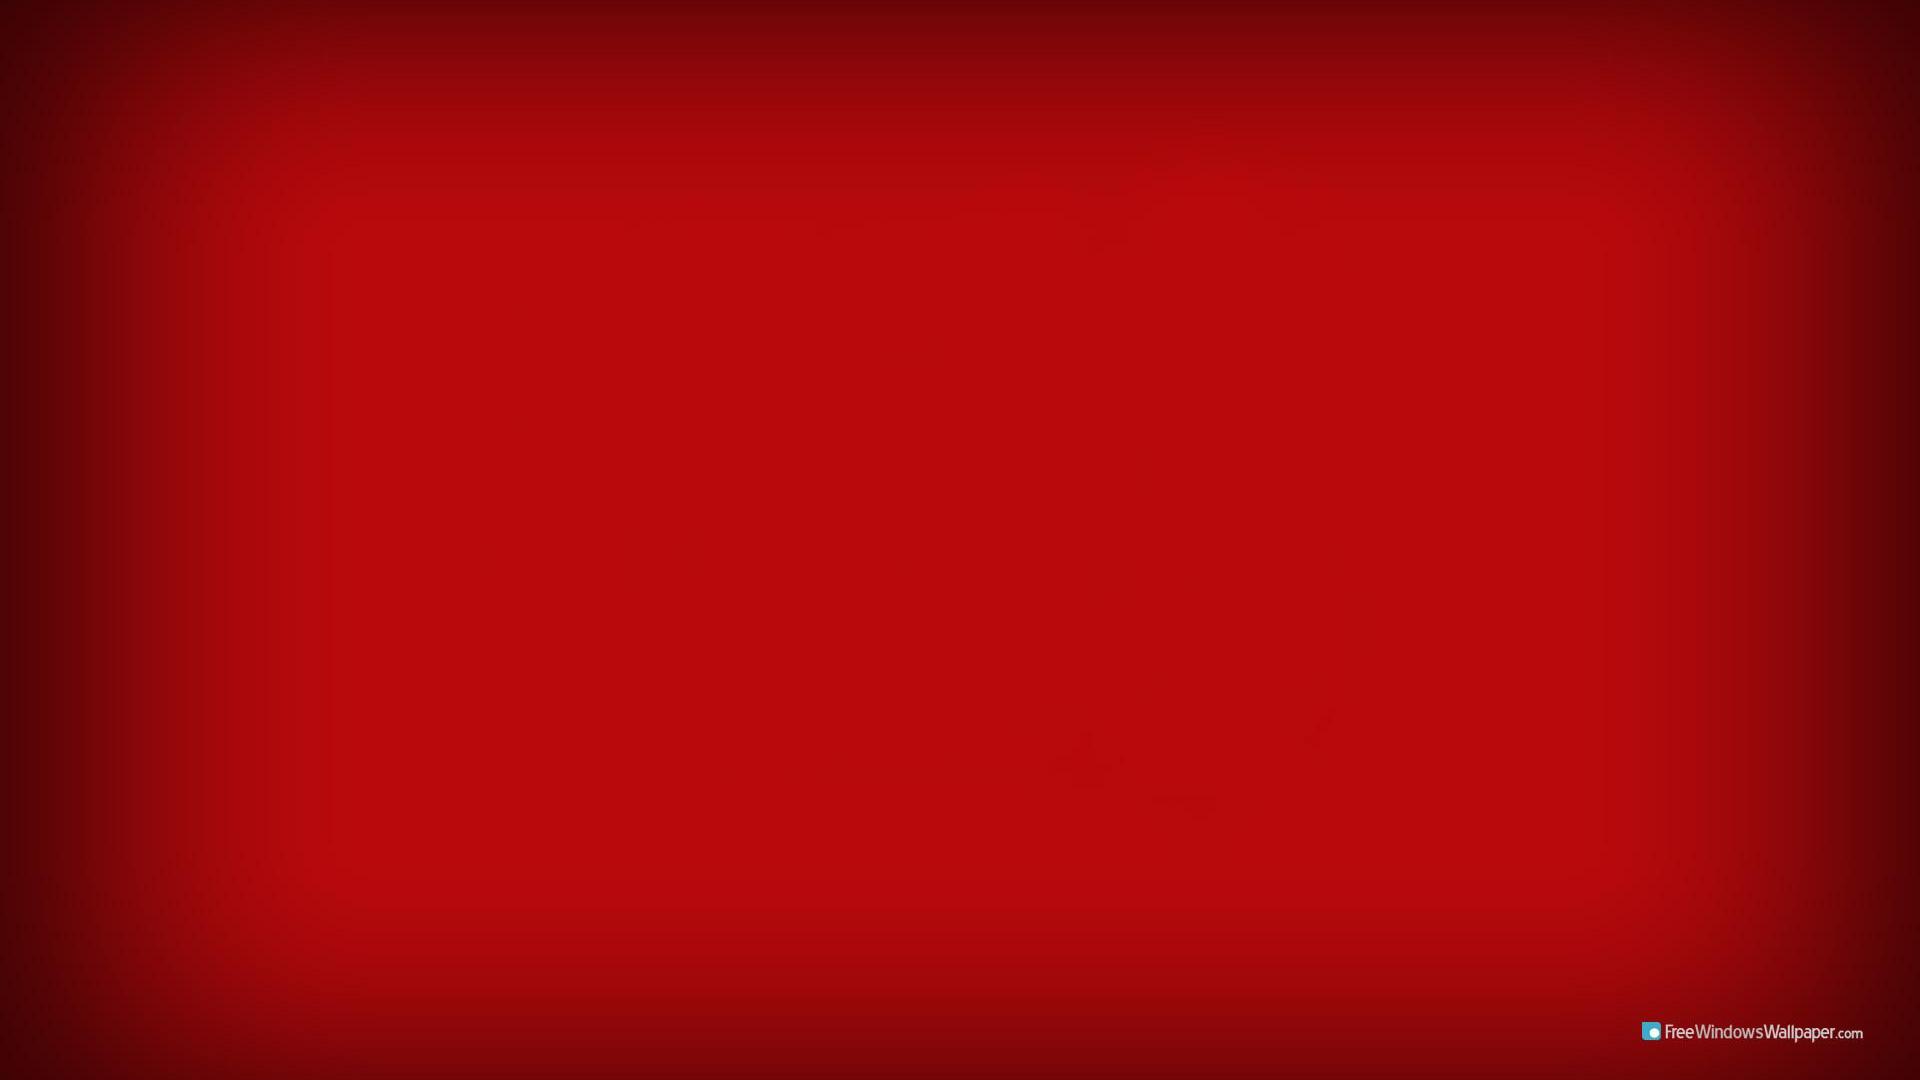 77+] Red Desktop - WallpaperSafari